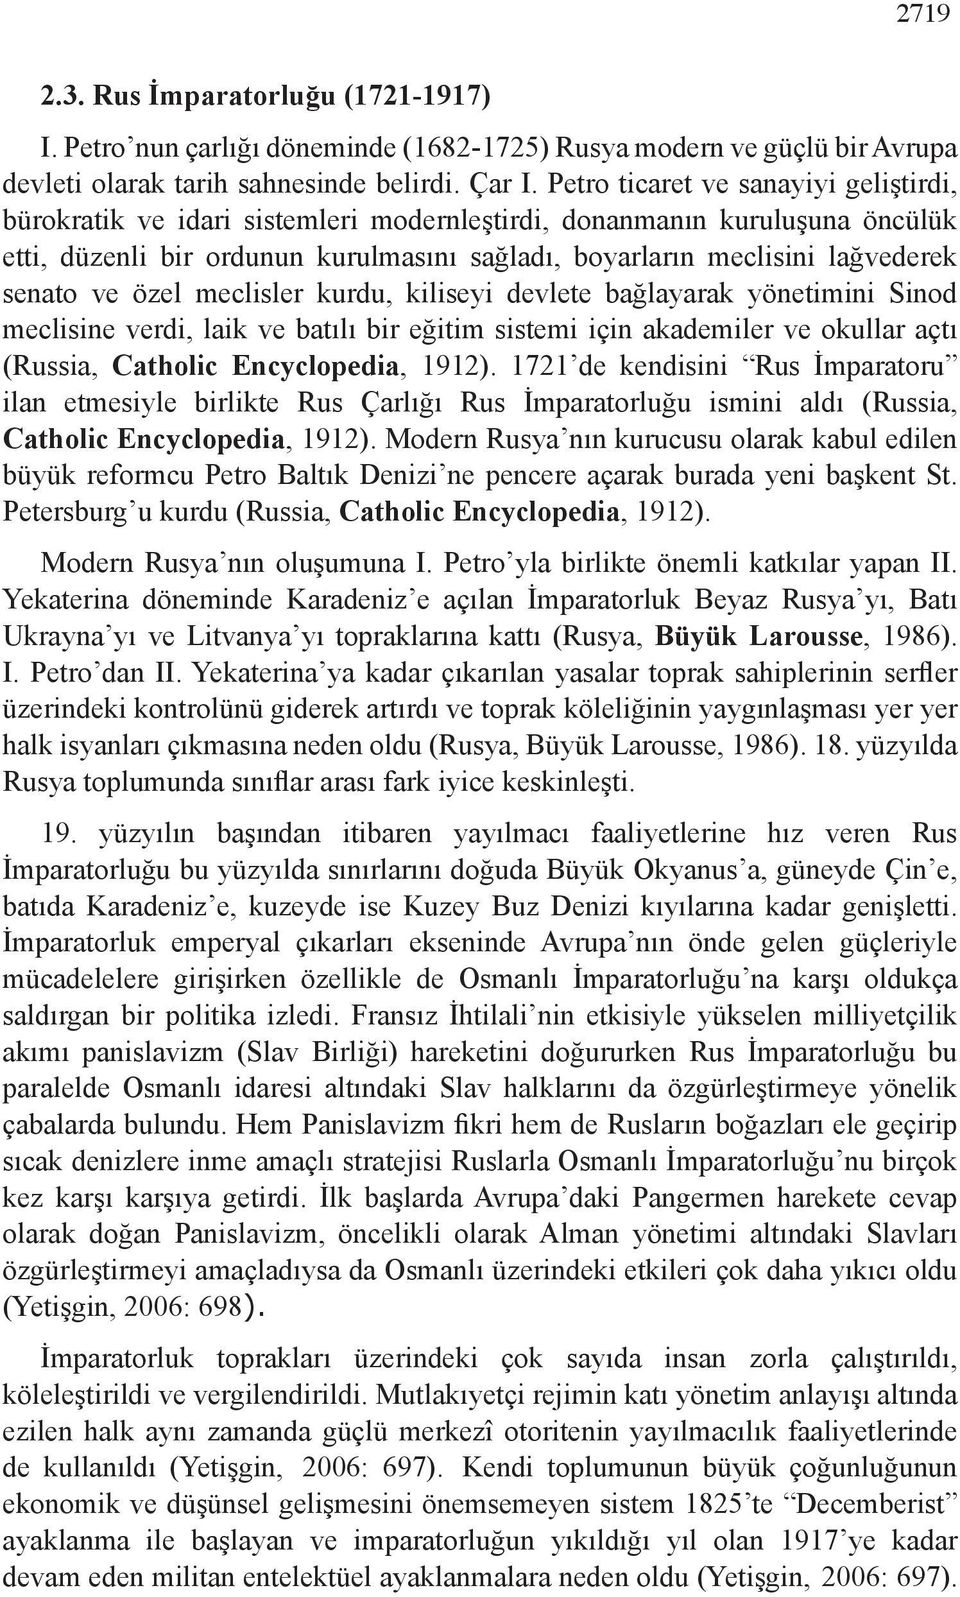 senato ve özel meclisler kurdu, kiliseyi devlete bağlayarak yönetimini Sinod meclisine verdi, laik ve batılı bir eğitim sistemi için akademiler ve okullar açtı (Russia, Catholic Encyclopedia, 1912).